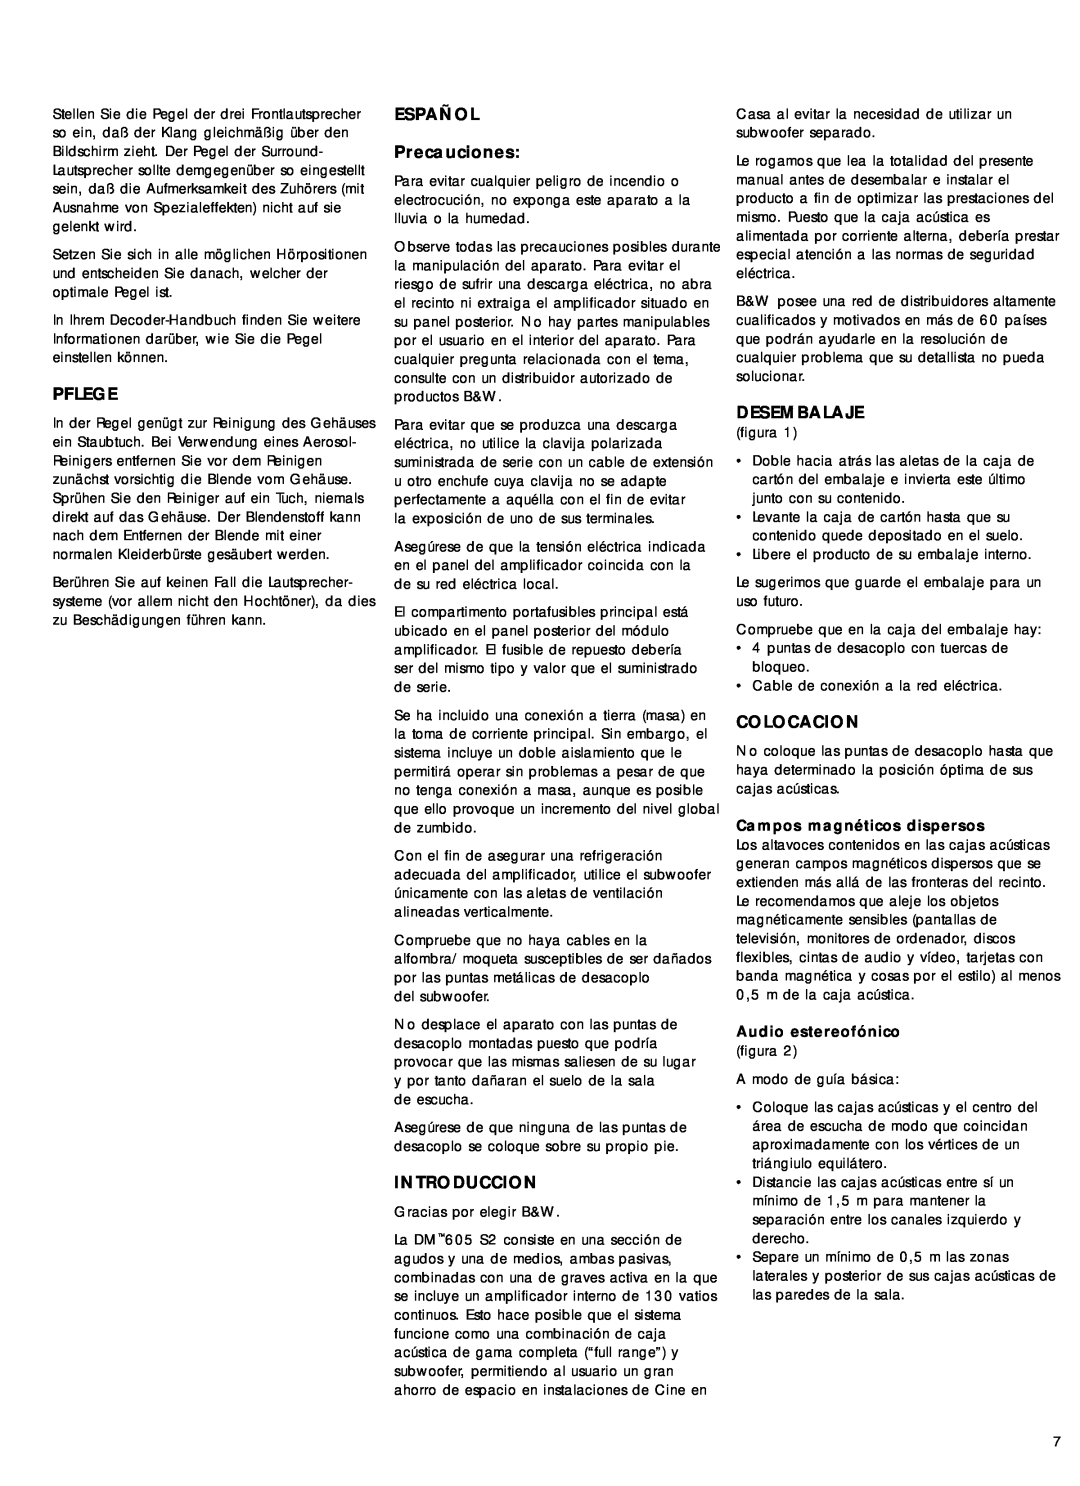 Bowers & Wilkins 600 Series2 owner manual Pflege, ESPAÑOL Precauciones, Introduccion, Desembalaje, Colocacion 